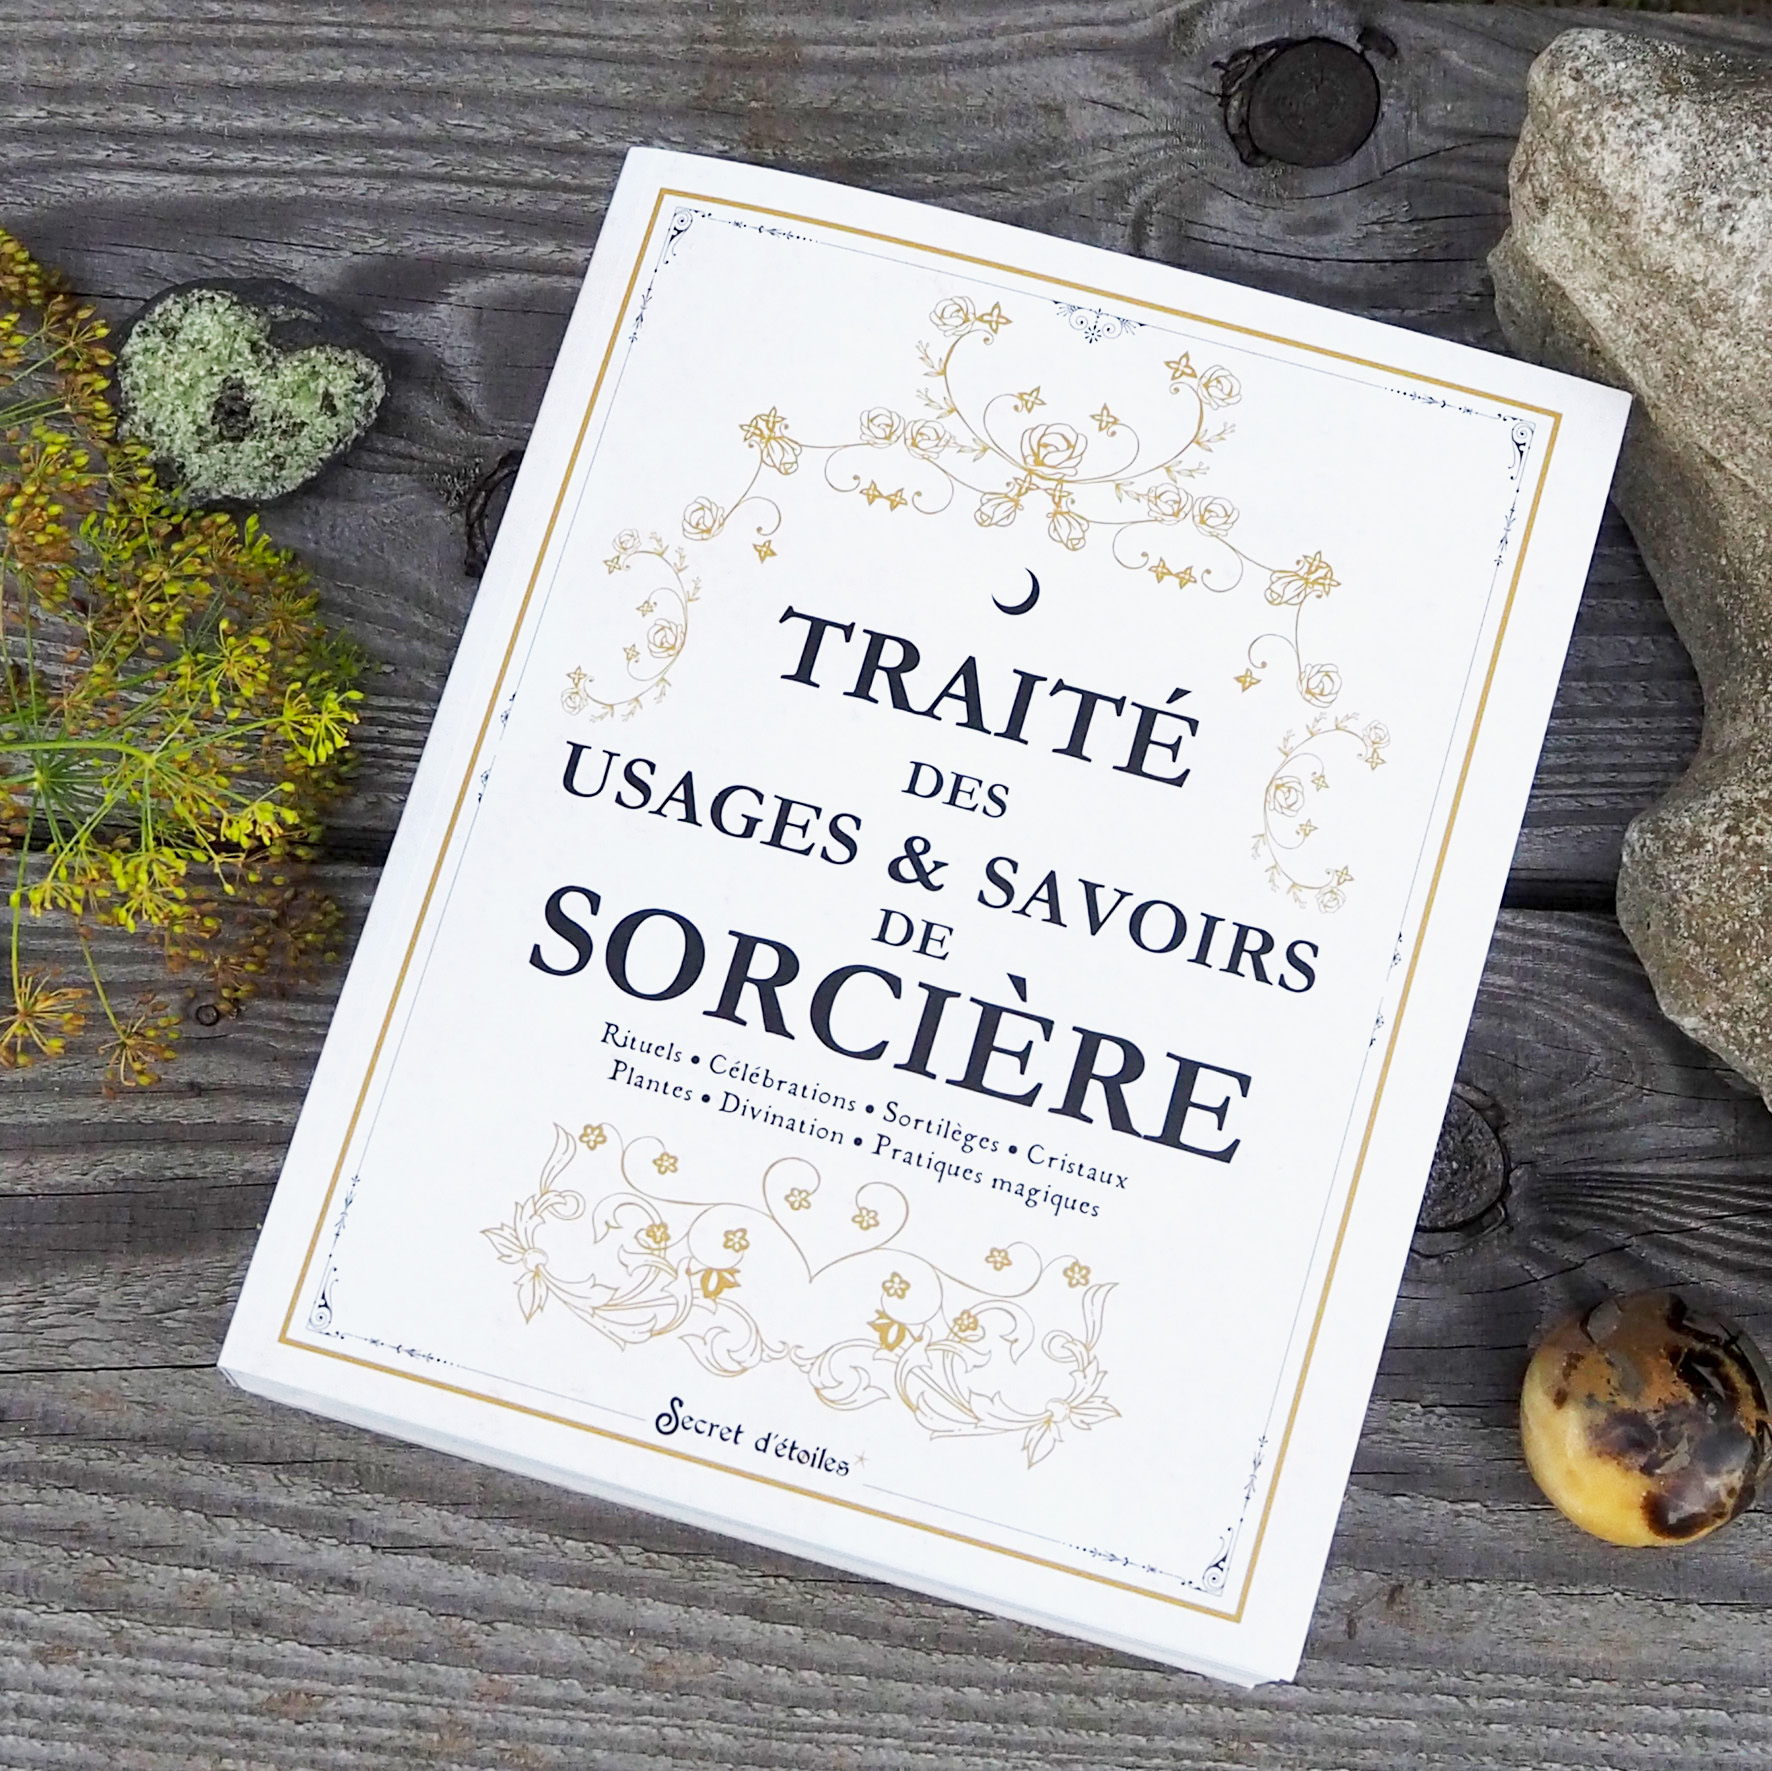 4-Traite_de_usages&savoirs_de_sorciere